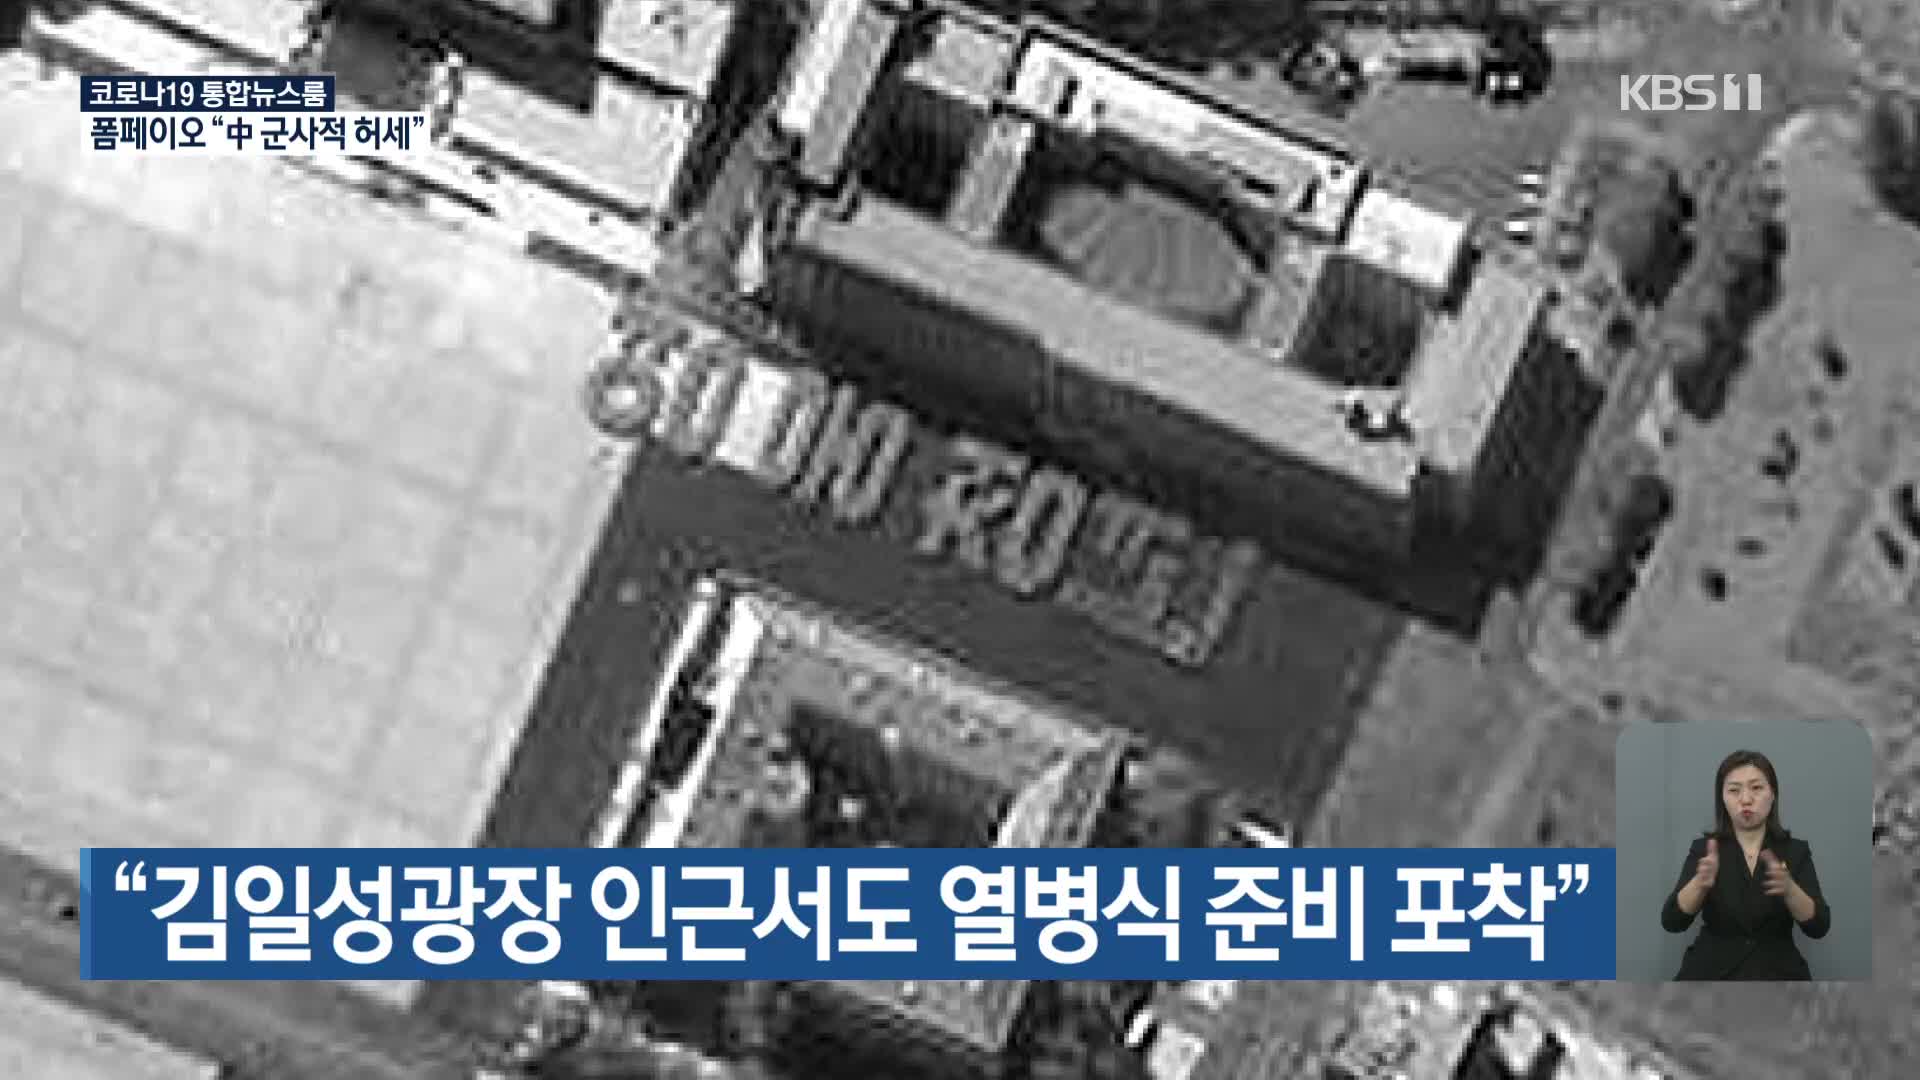 “김일성광장 인근서도 열병식 준비 포착”